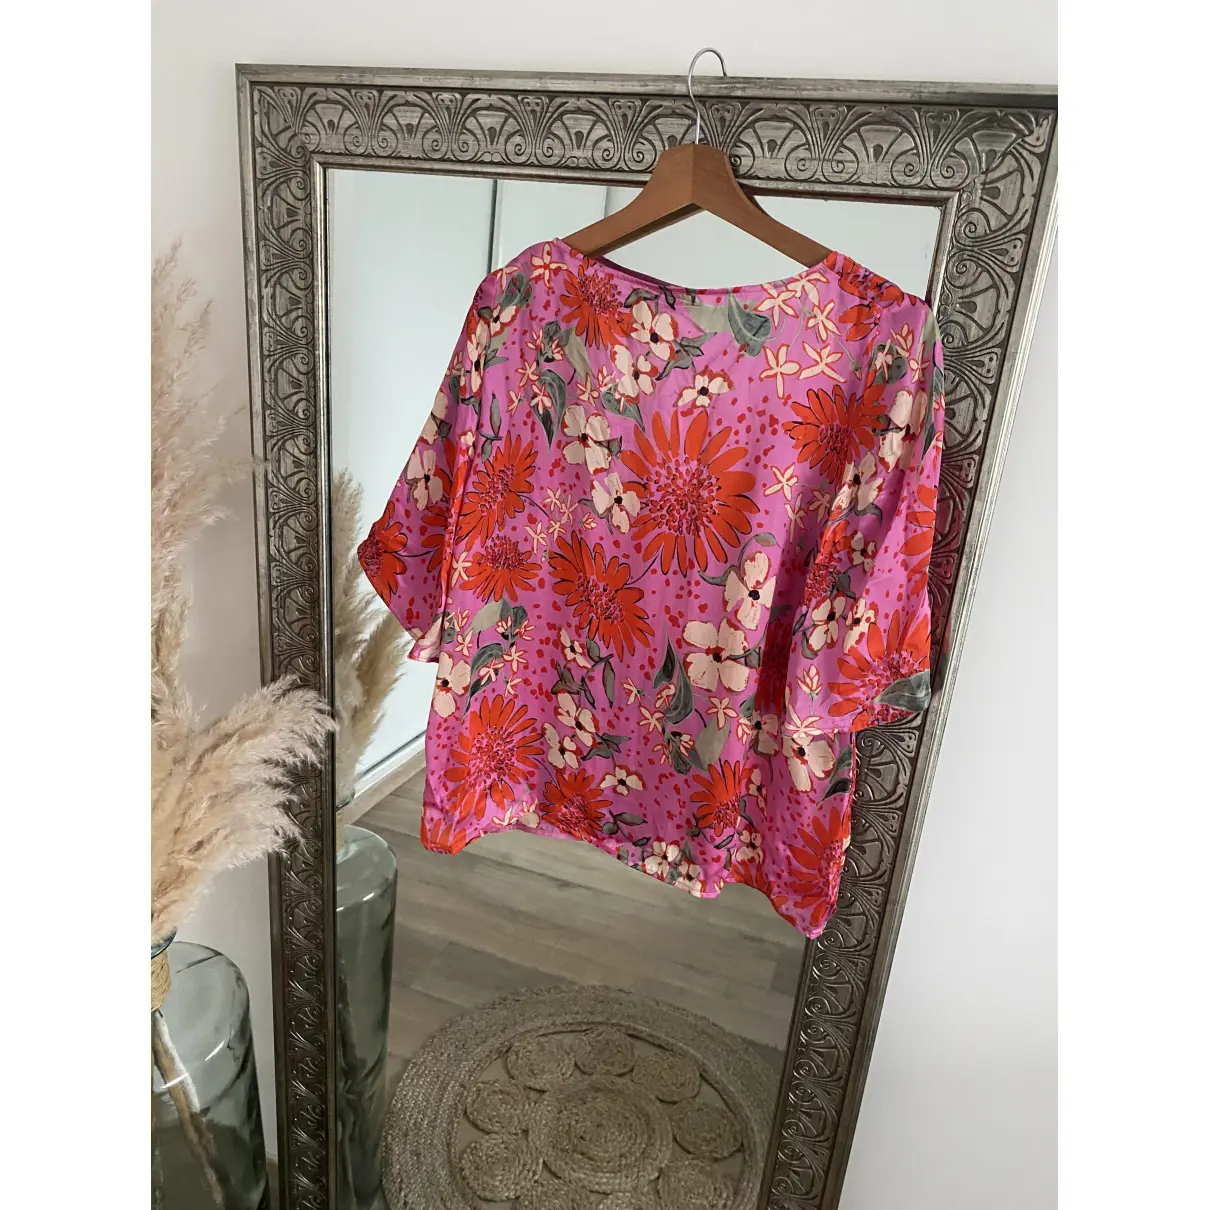 Buy Sézane Silk blouse online